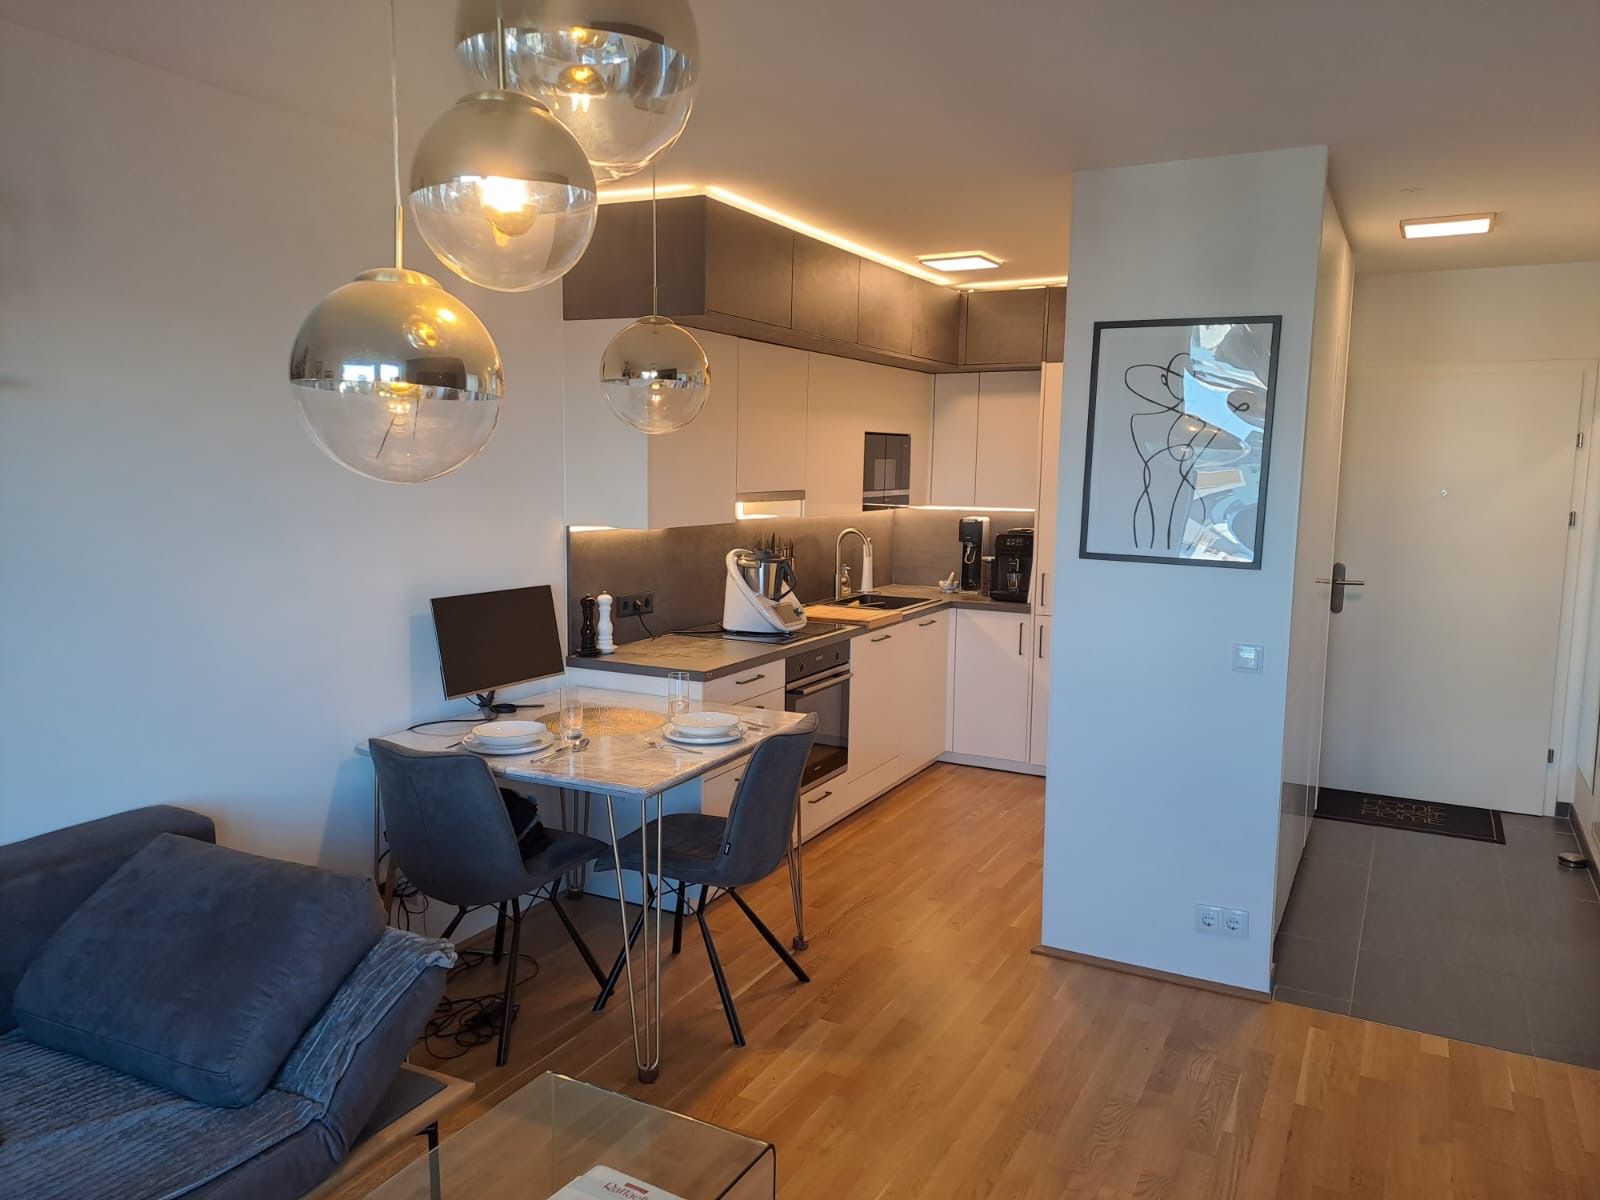 2 Zimmer Wohnung in Stadlau 1220 Wien zu vermieten